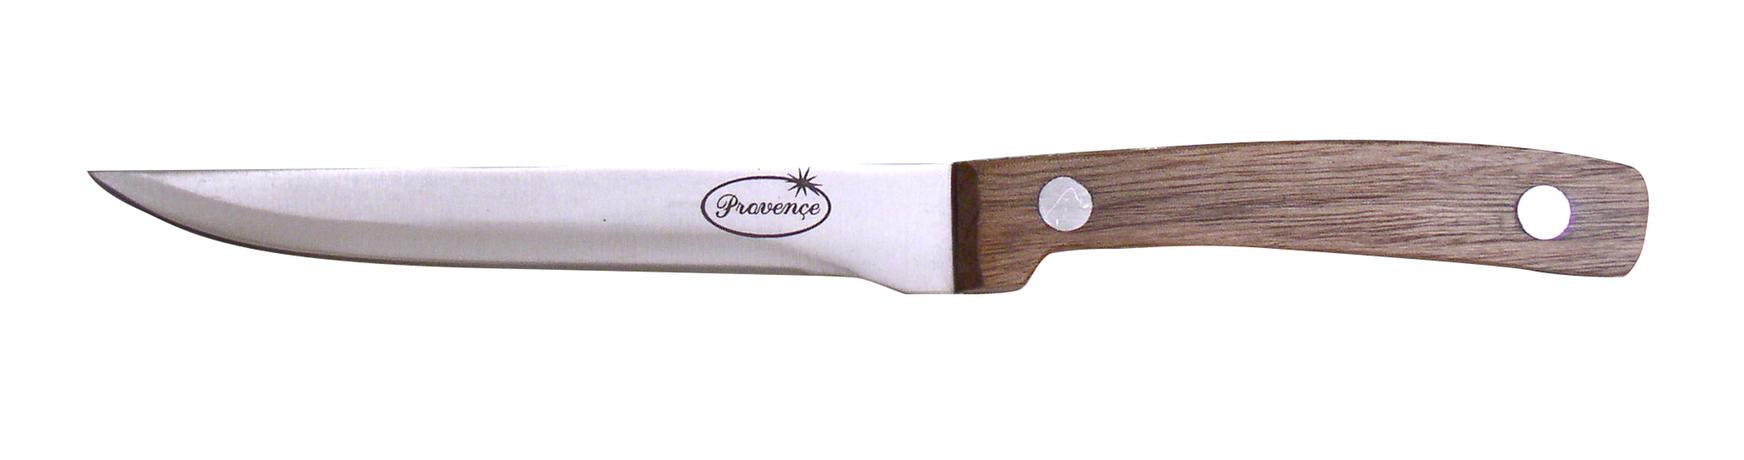 Vykošťovací nůž PROVENCE Wood 15cm